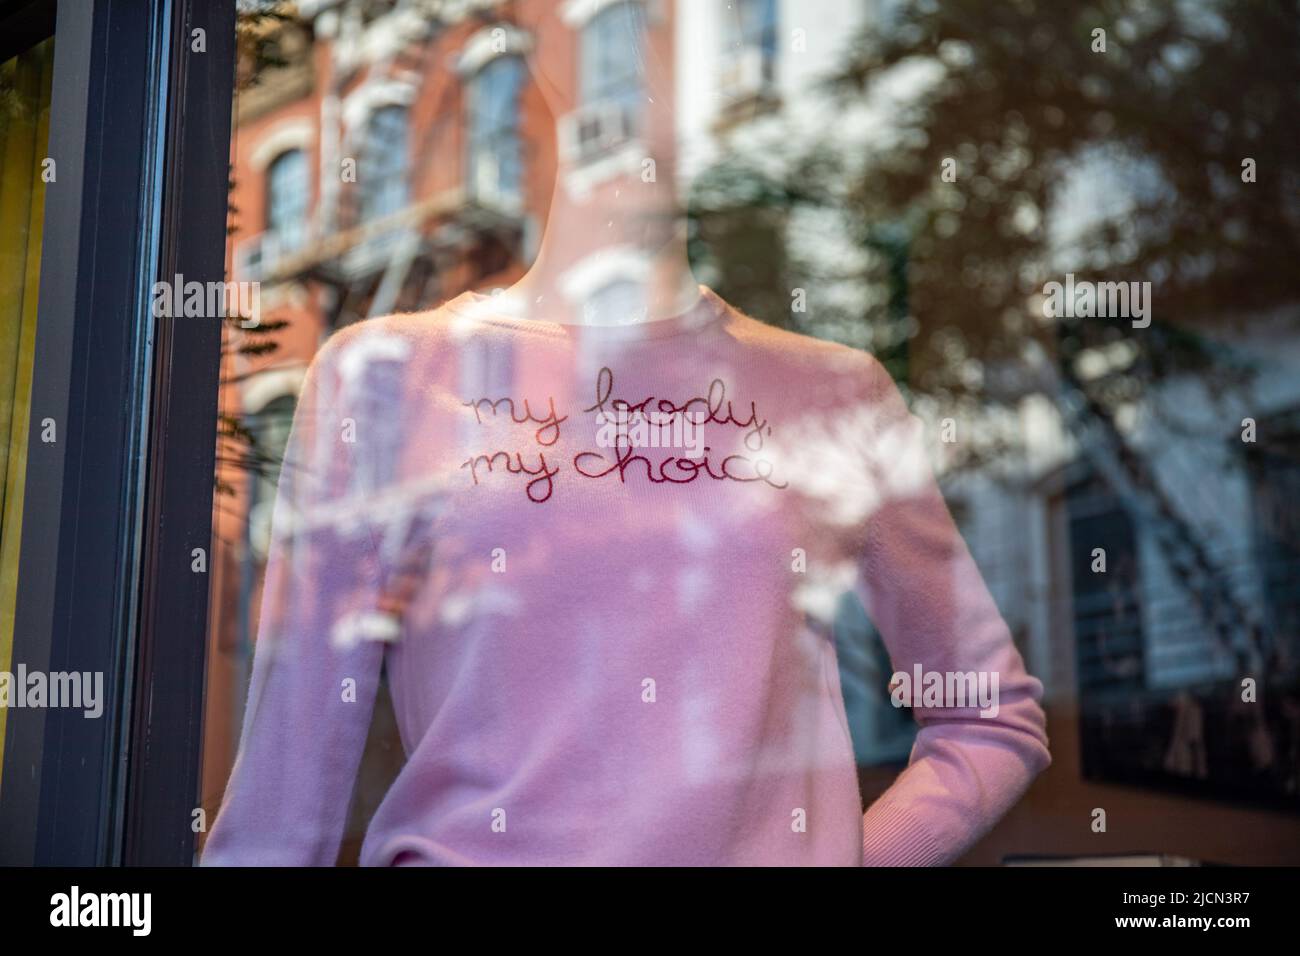 Mon corps, mon choix. Chandail rose dans la fenêtre d'exposition dans le quartier d'emballage de viande de New York City, États-Unis d'Amérique Banque D'Images